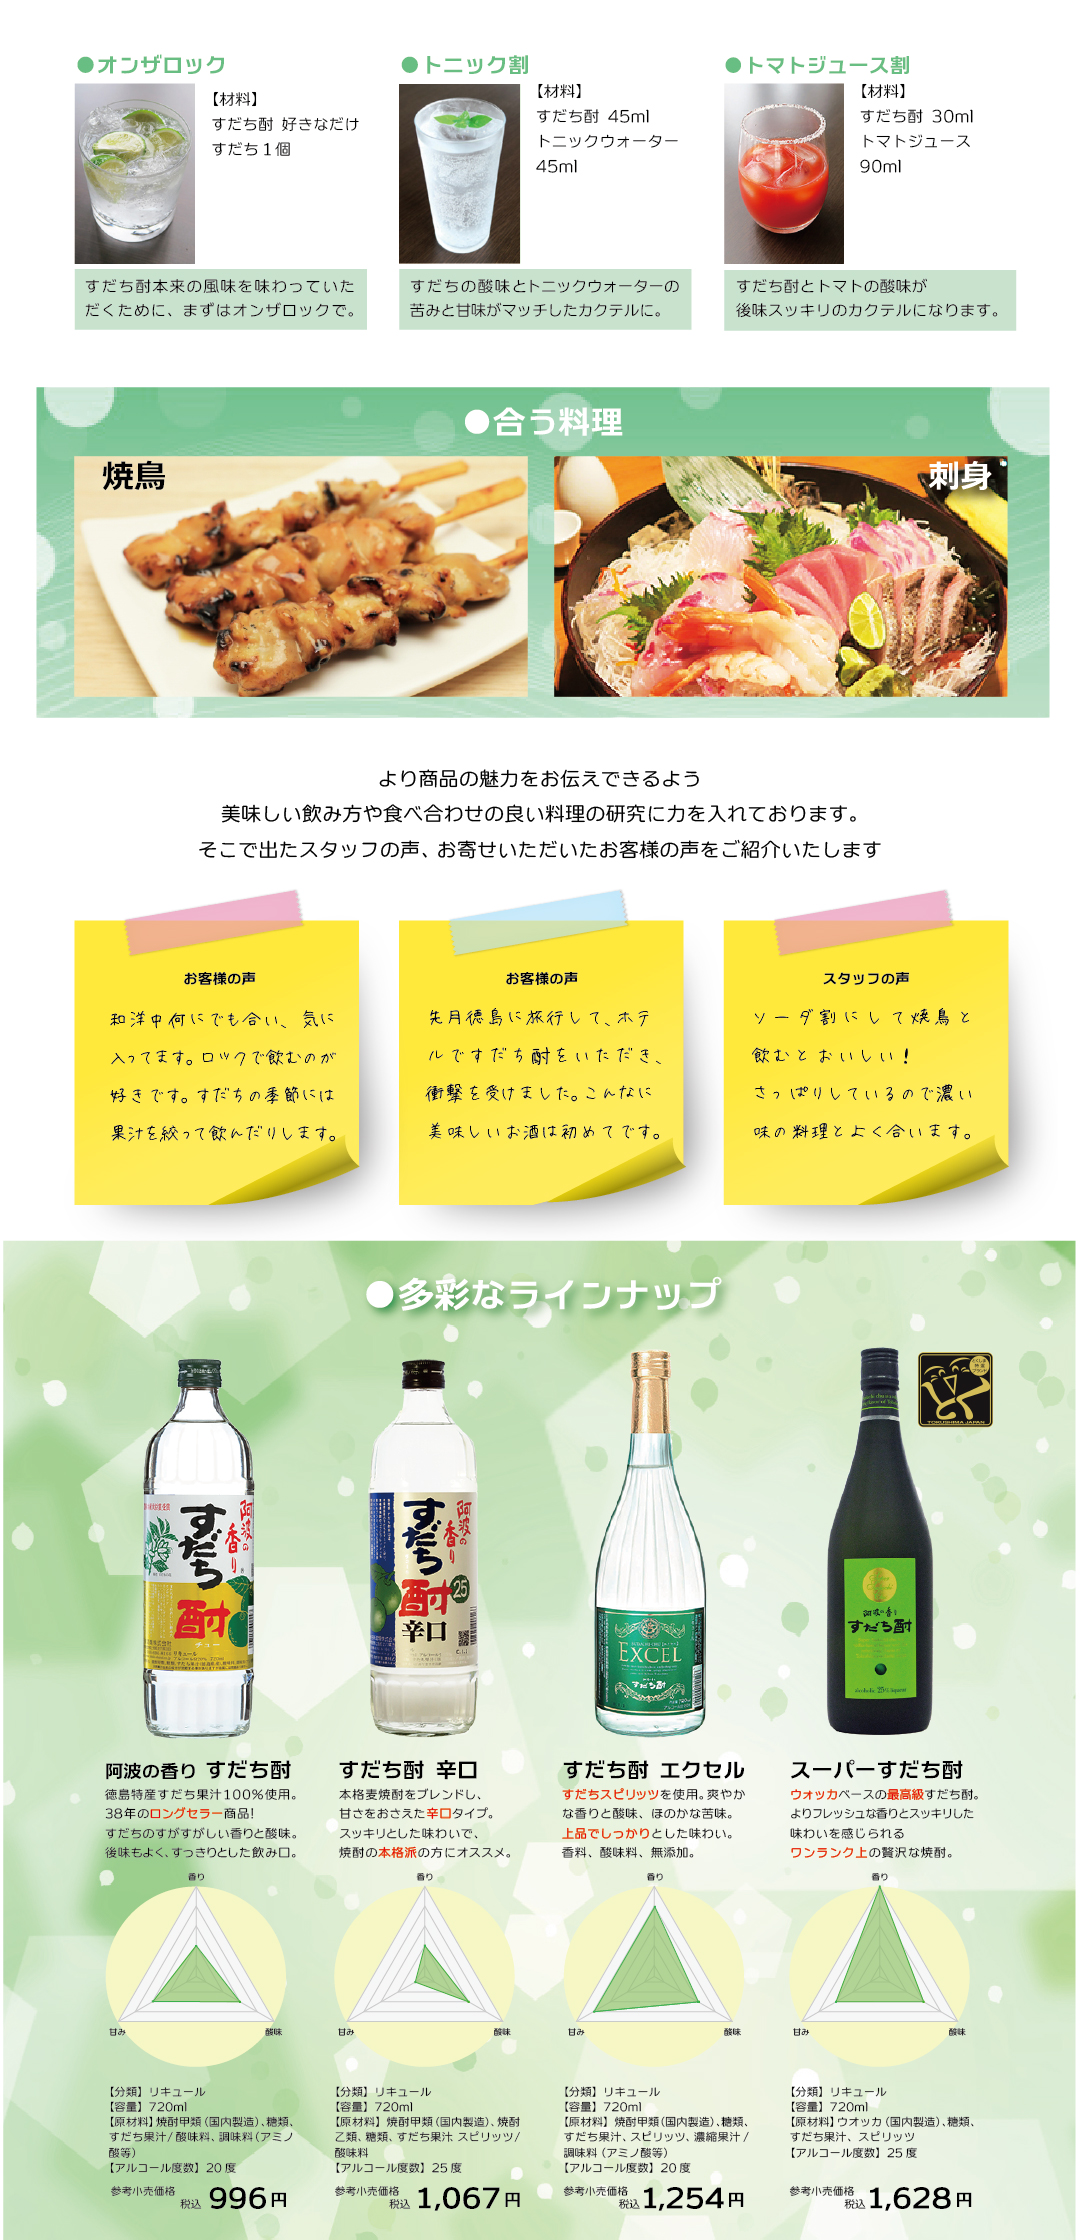 日新酒類「すだち酎」はロングセラーで徳島のお取り寄せとして人気。